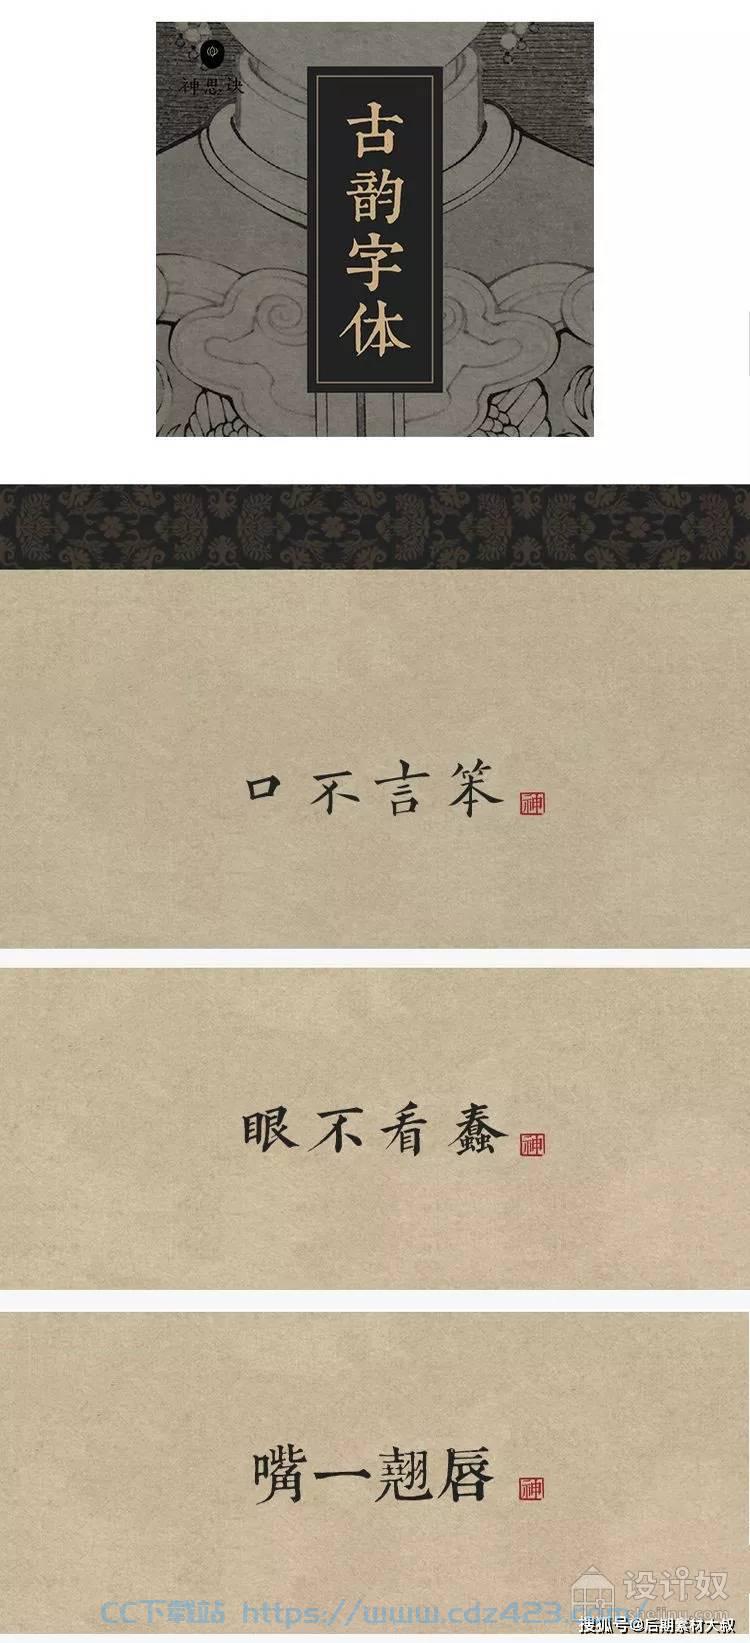 [字体] 中国风设计素材——古韵中文字体92款